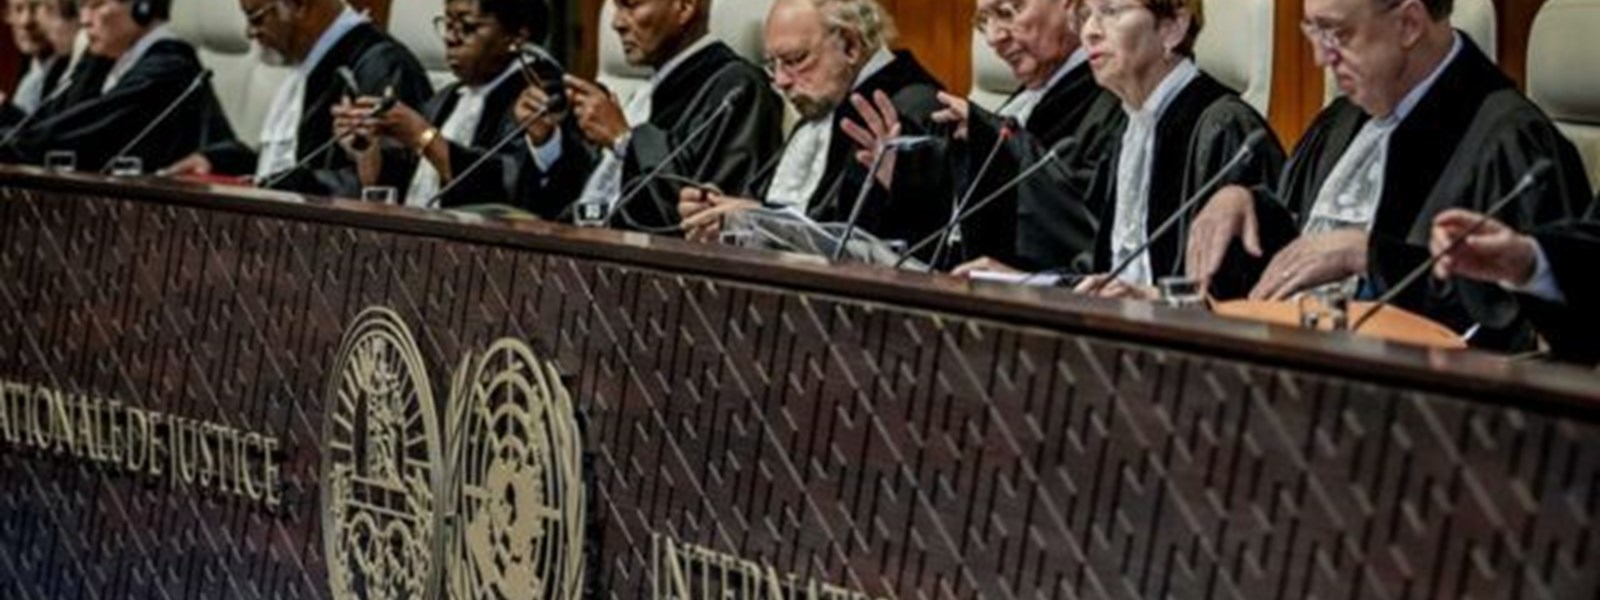 محكمة العدل الدولية.